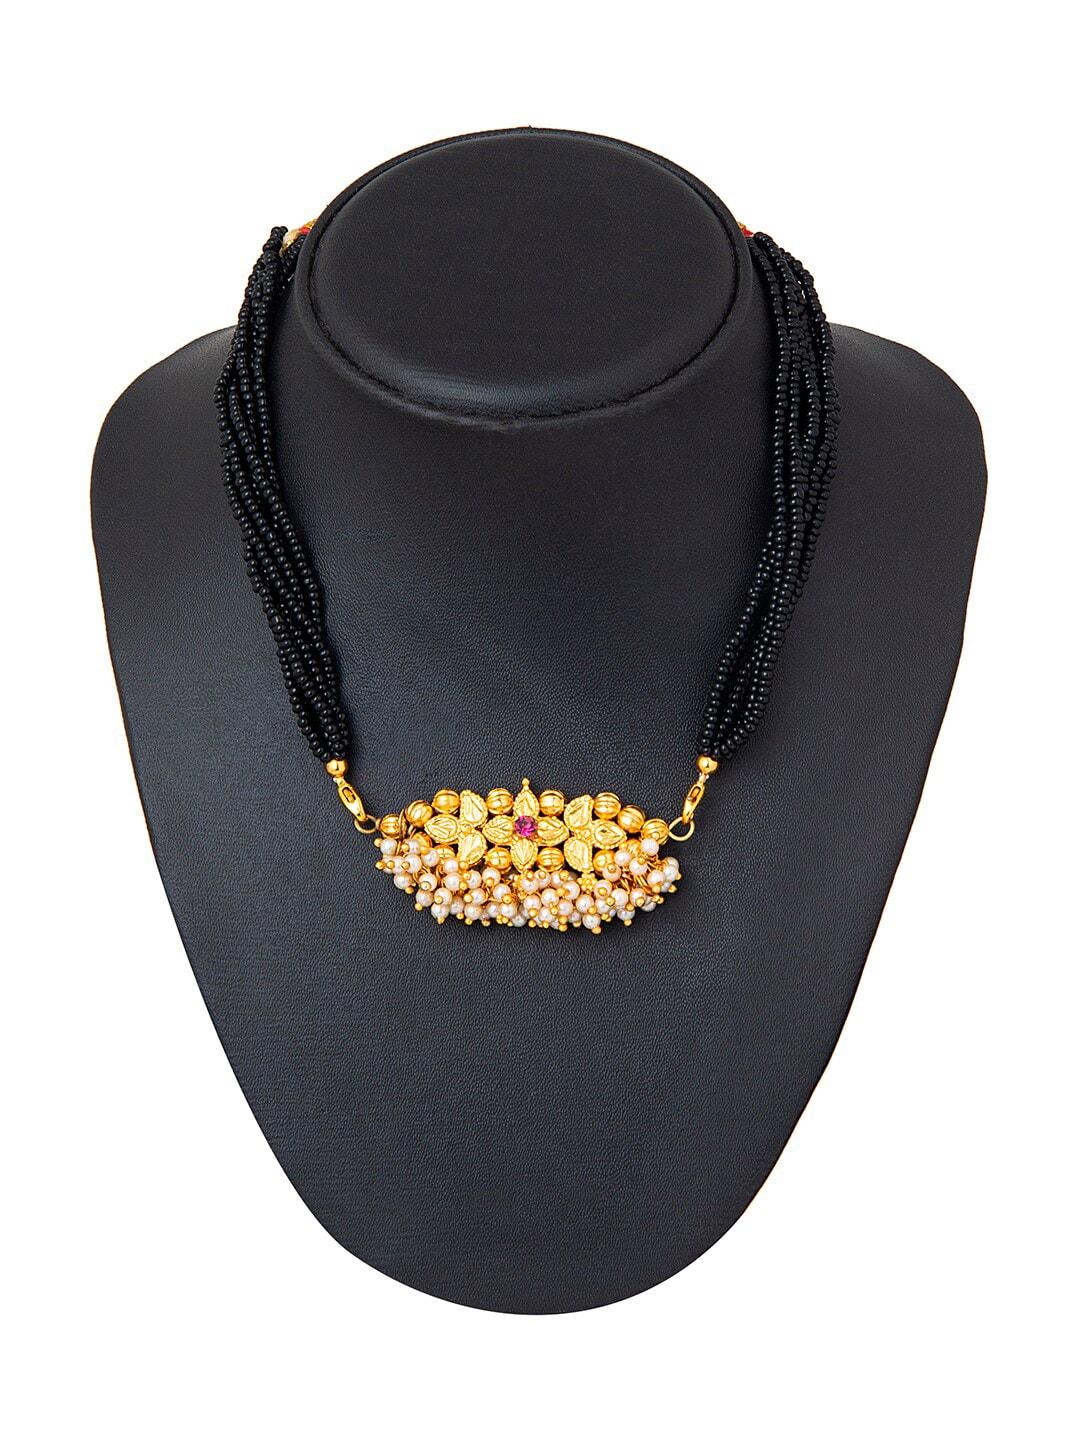 Shining Jewel - By Shivansh Women Gold-Toned Mangalsutra Thushi Necklace